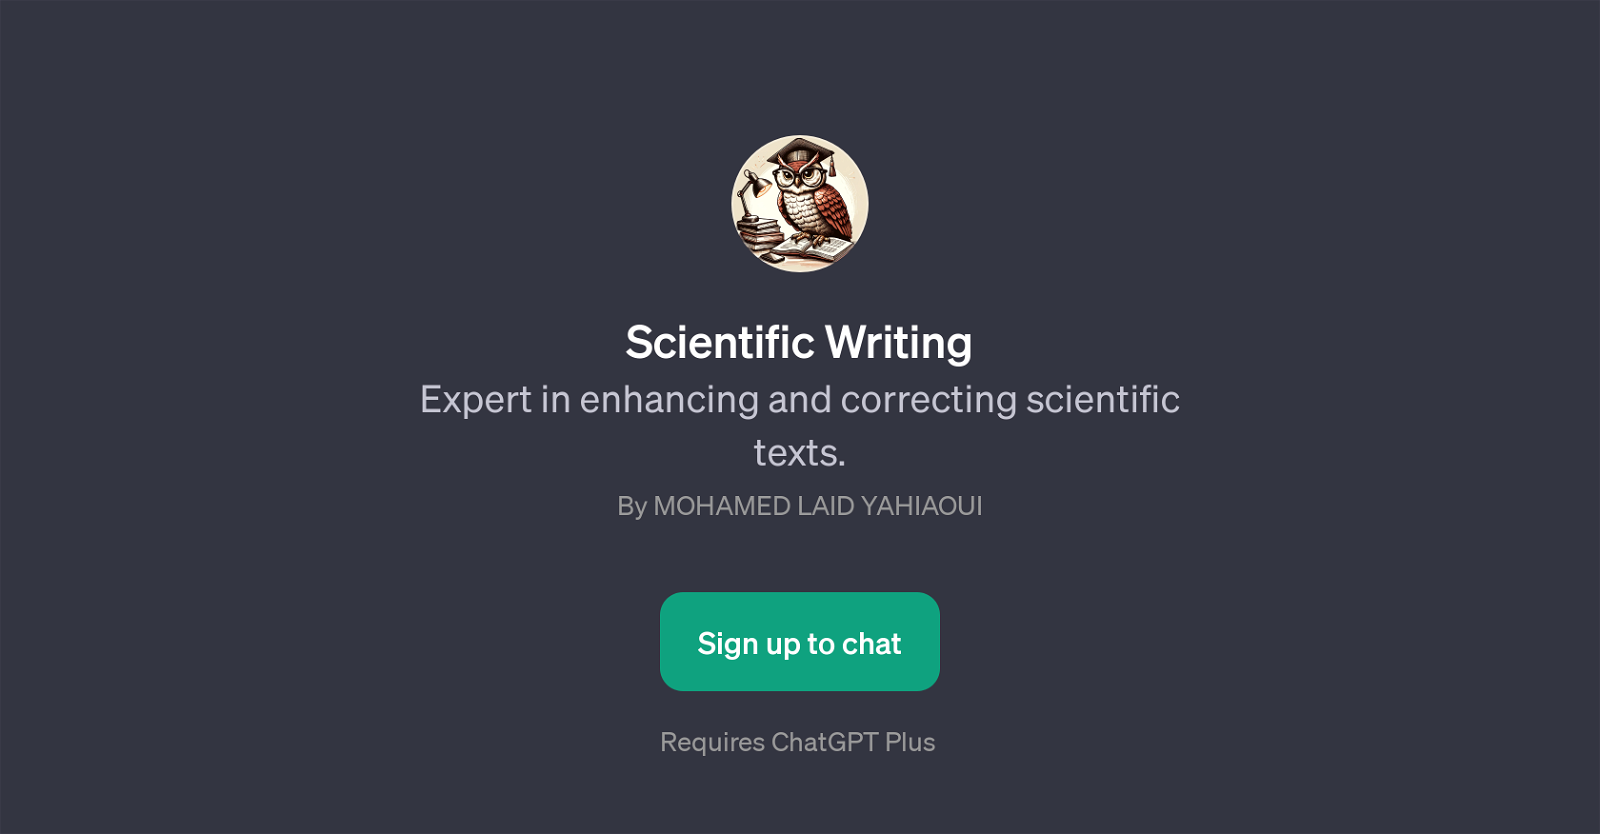 Scientific Writing website